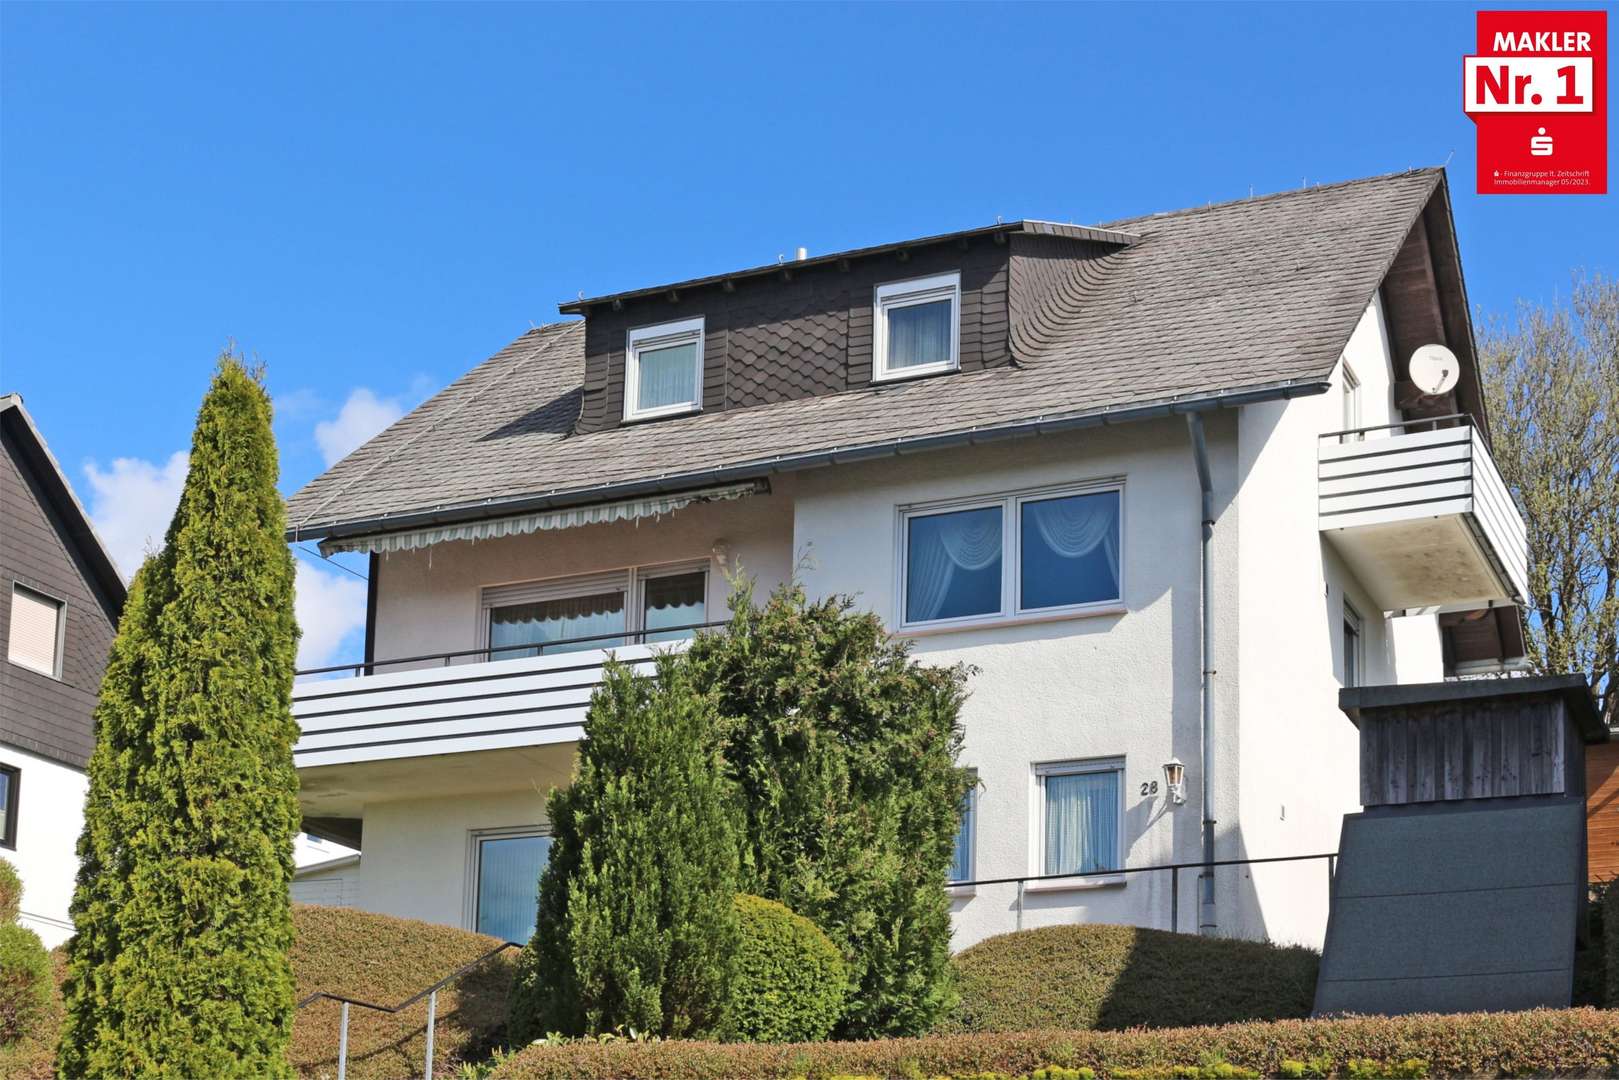 fio 2983034a - Einfamilienhaus in 59955 Winterberg mit 189m² kaufen